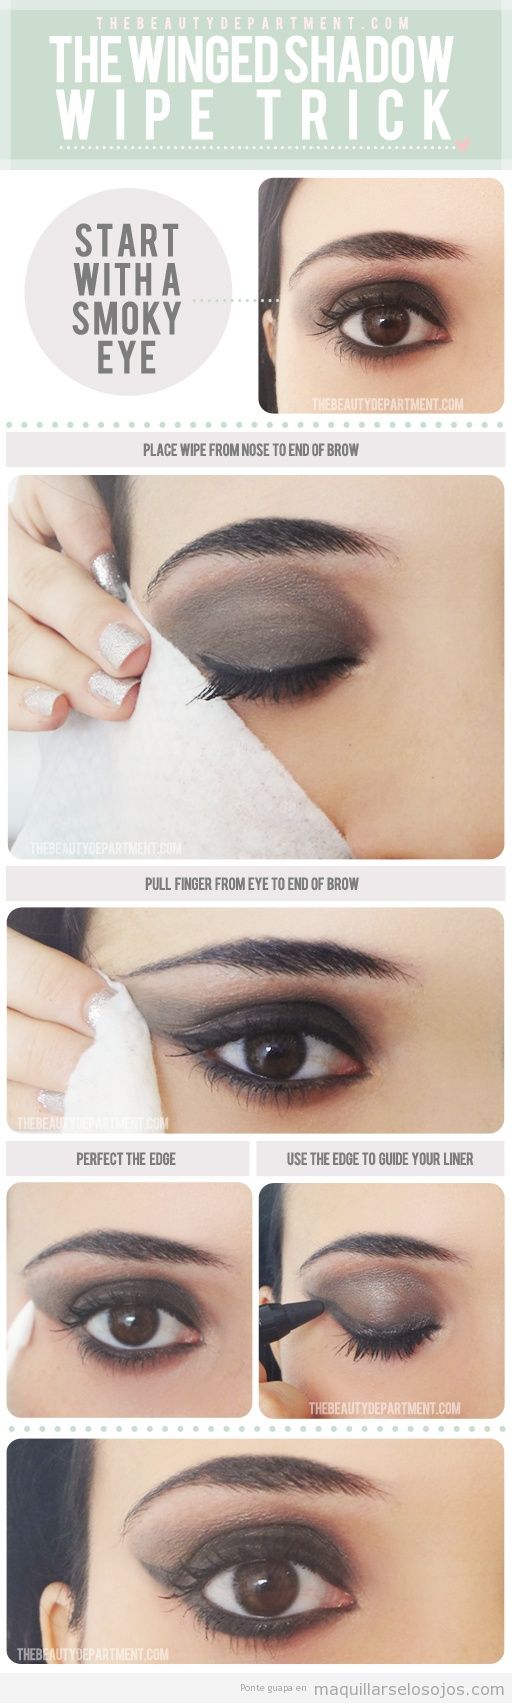 Técnicas archivos • Página 3 de 4 • Maquillarse los ojos